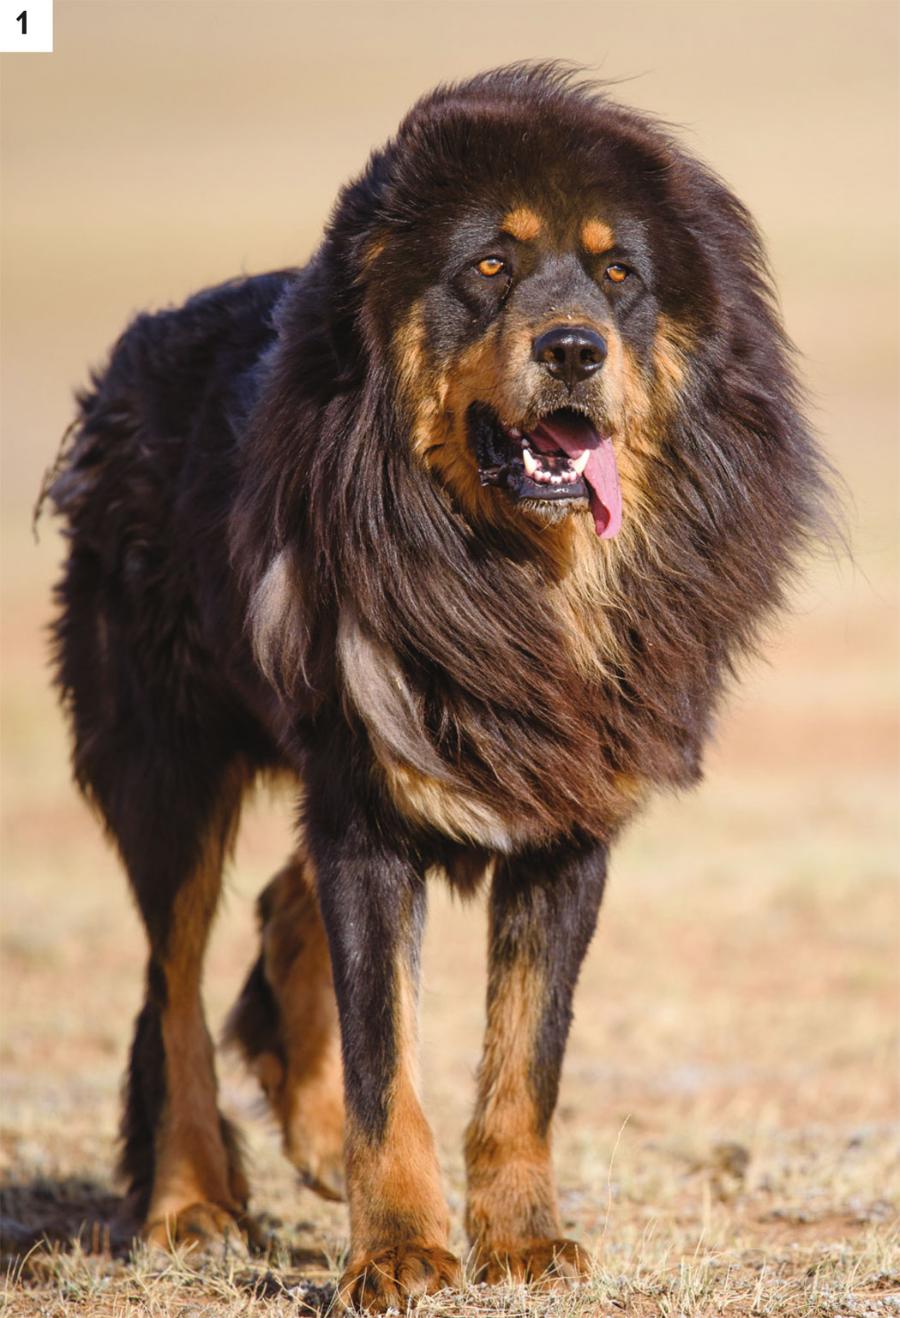 Przywracanie bancharów, lokalnej rasy mongolskich psów pasterskich (1), może ograniczyć porywanie kóz przez irbisy i wilki, a tym samym chronić te zagrożone drapieżniki (2).